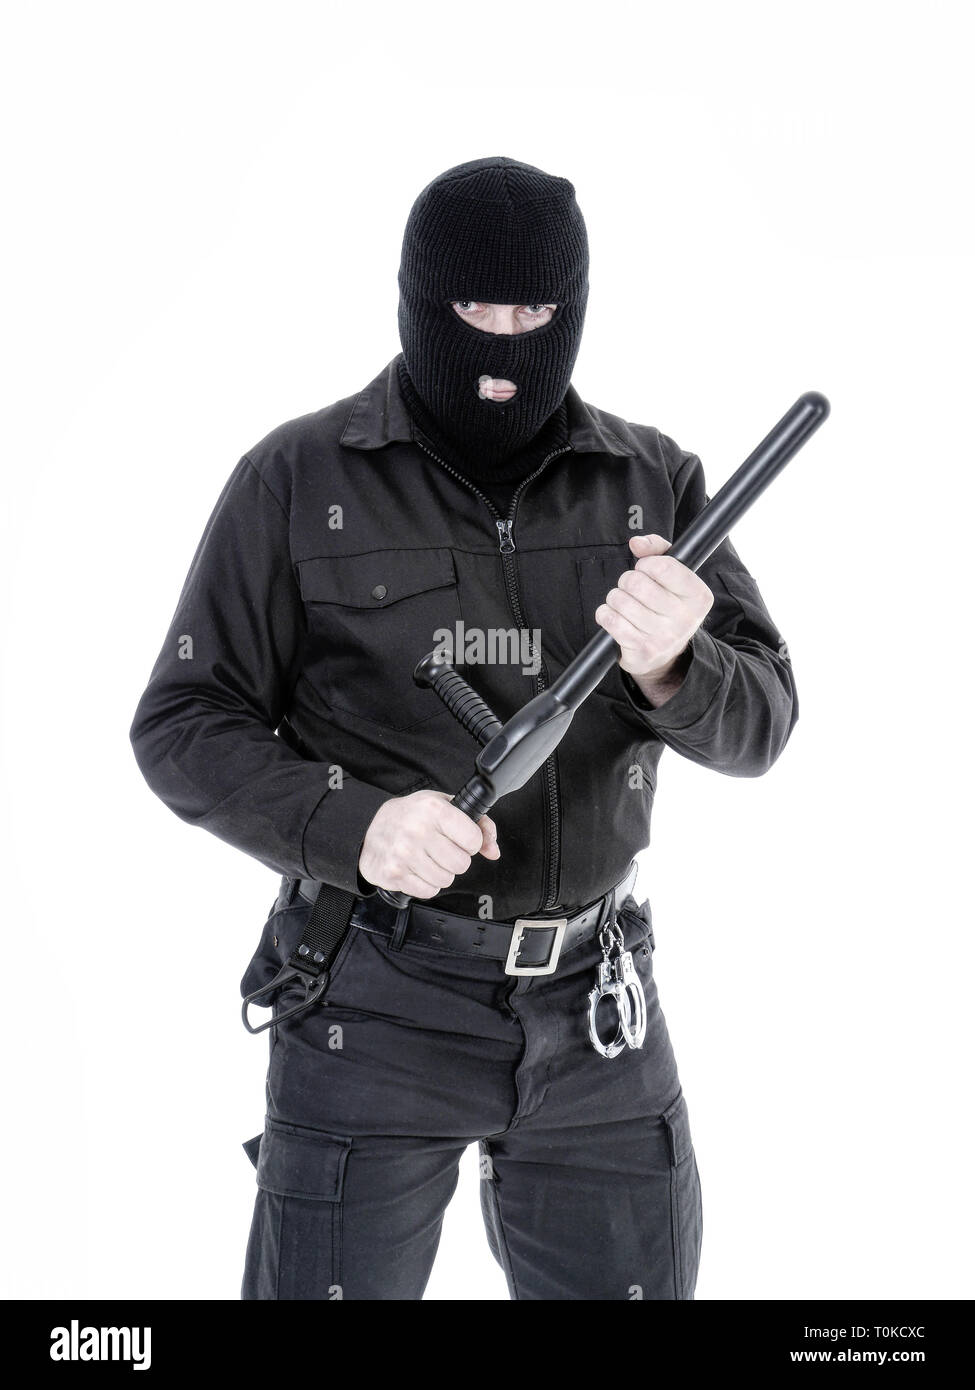 La police antiterroriste mec uniforme noir et noir balaclava holding police club fermement à deux mains, shot on white Banque D'Images